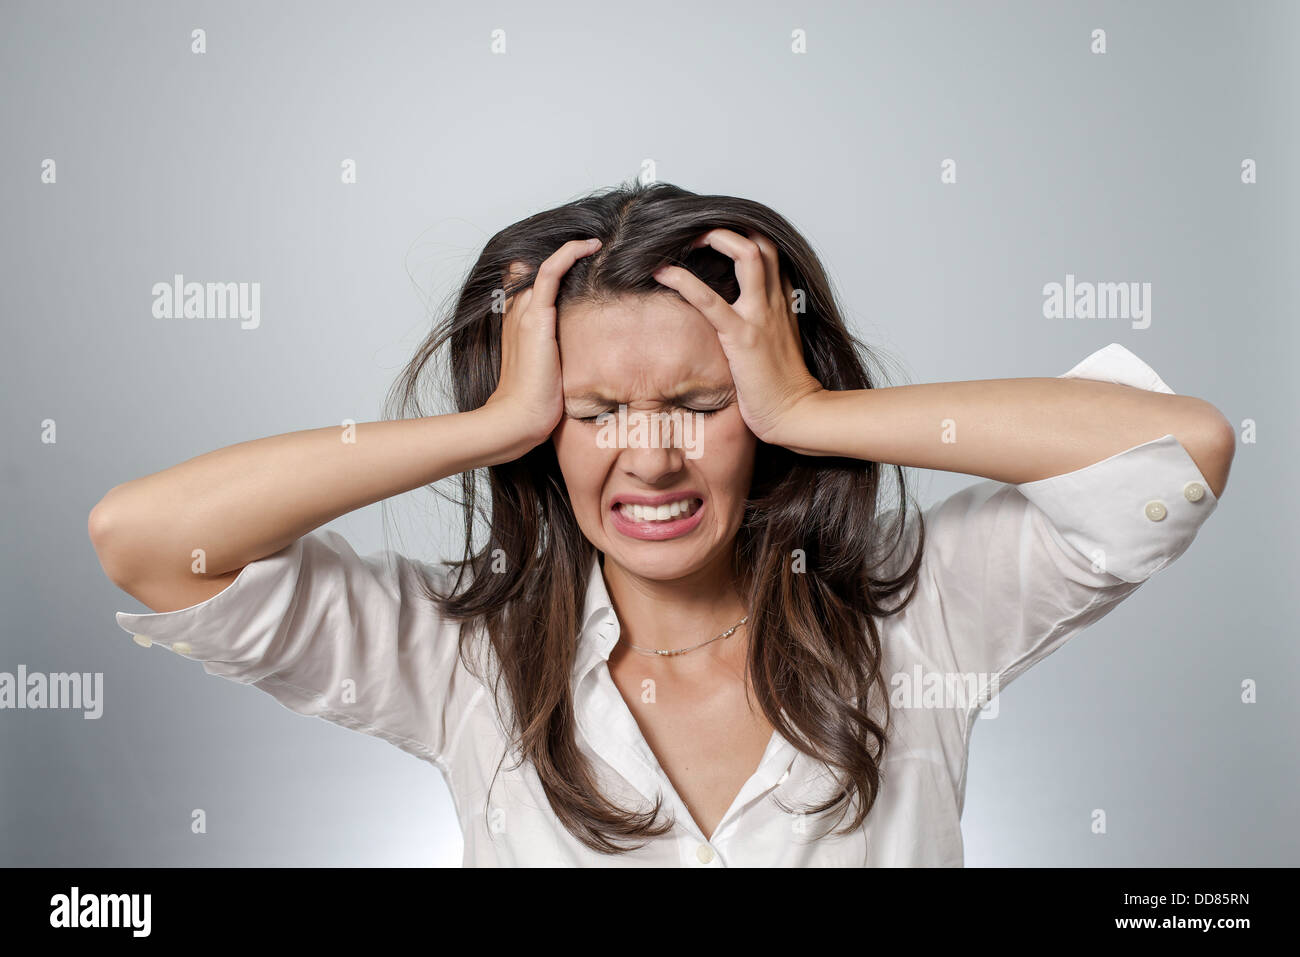 Frau mit Kopfschmerzen und negativen Gesichtsausdruck - Burn-Out, Depression, Frustration, Krankheit Stockfoto